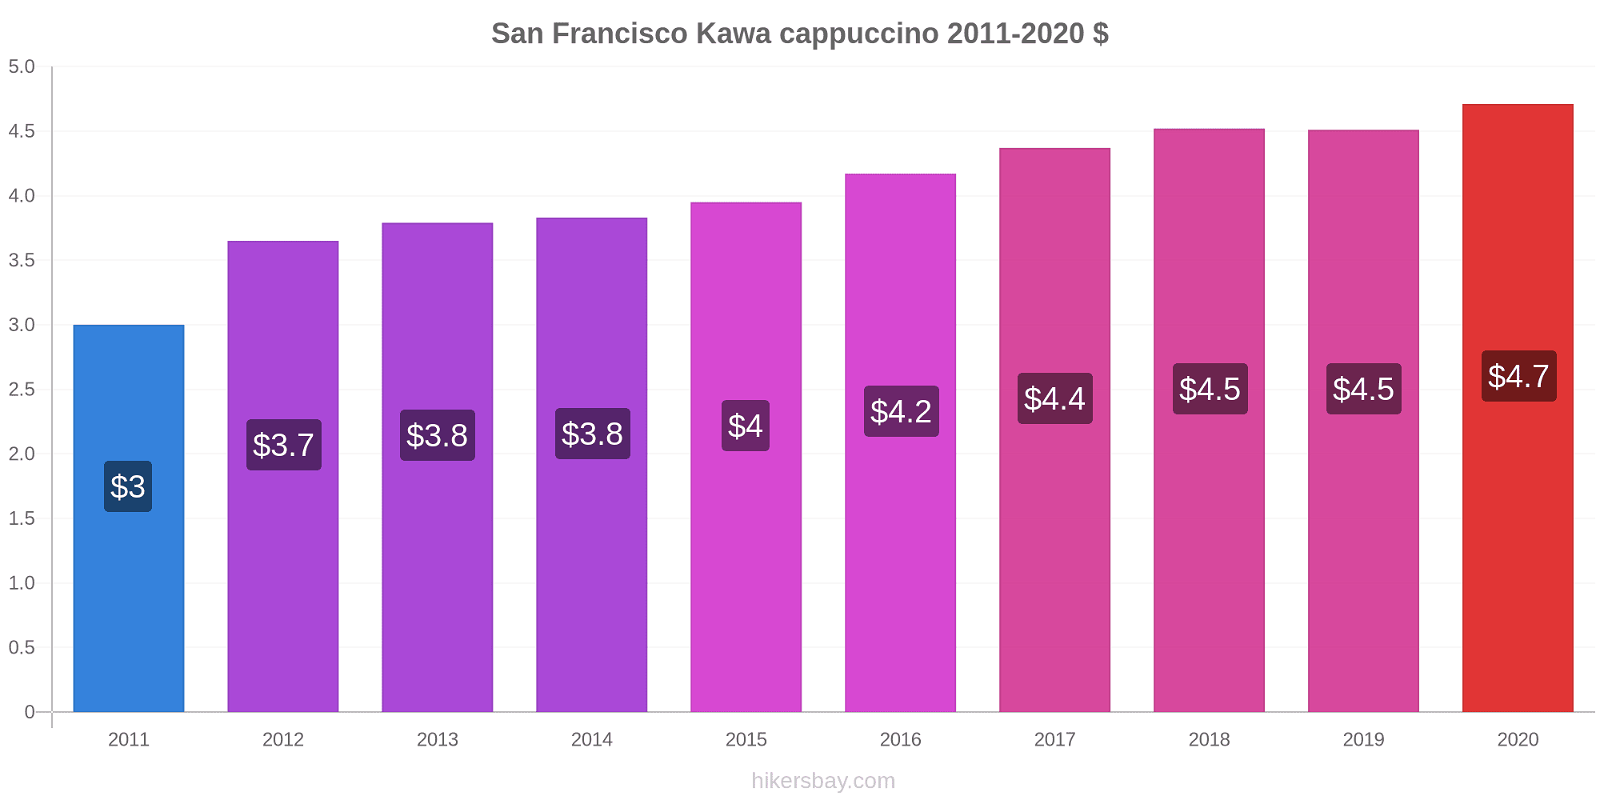 San Francisco zmiany cen Kawa cappuccino hikersbay.com